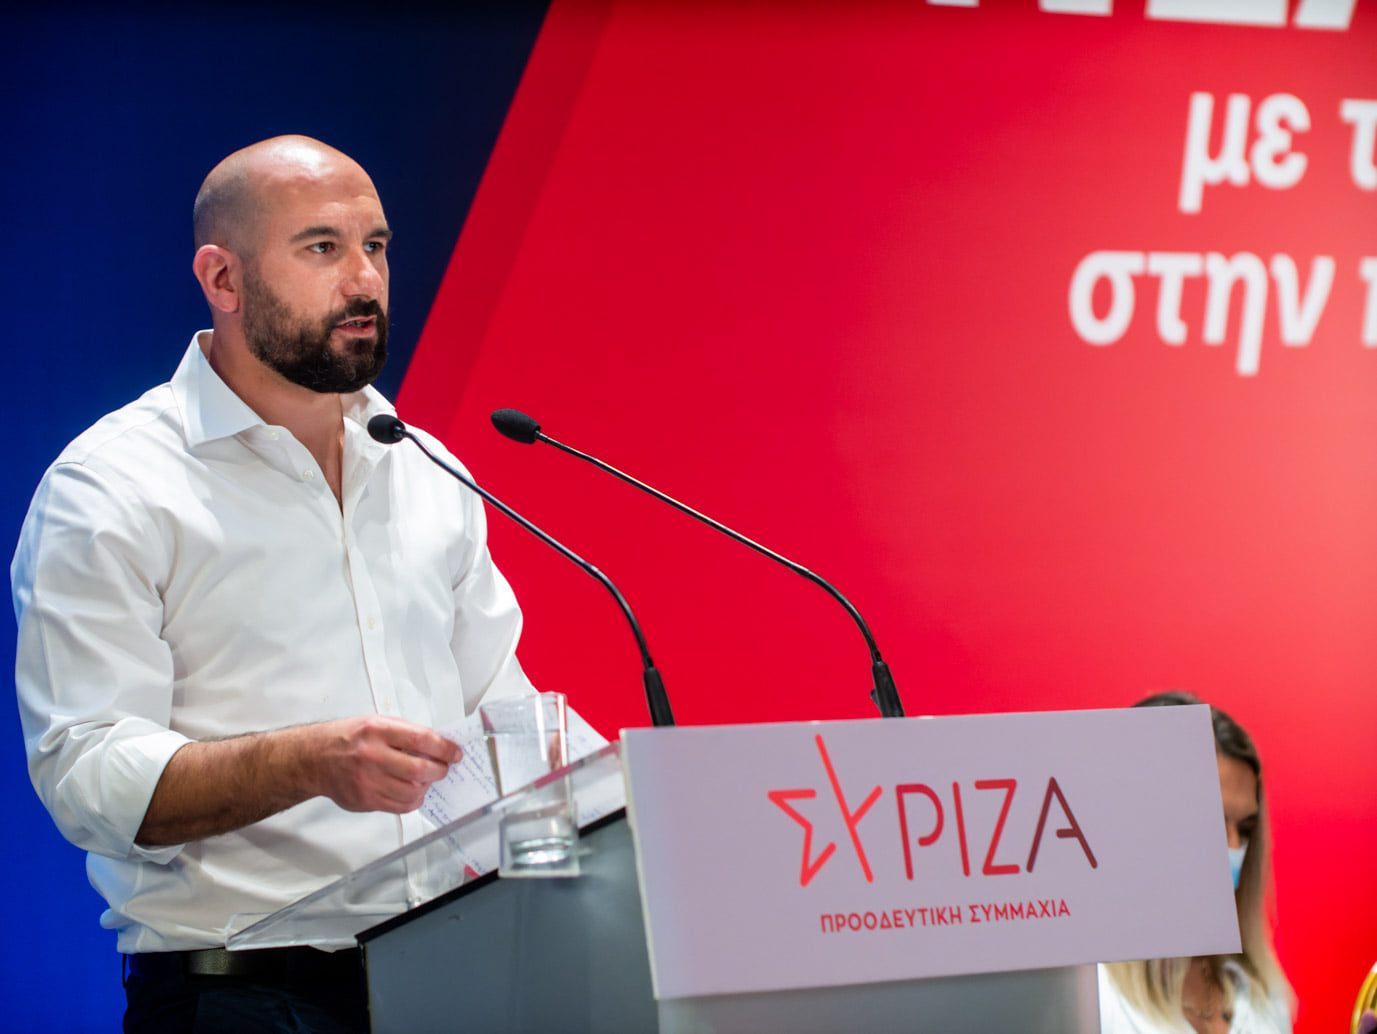 Δ. Τζανακόπουλος: Η κυβέρνηση δε δίνει απολύτως καμία απάντηση για το αν και κατά πόσο έχει συναλλαγές και κάνει outsourcing παρακολουθήσεις με το Predator